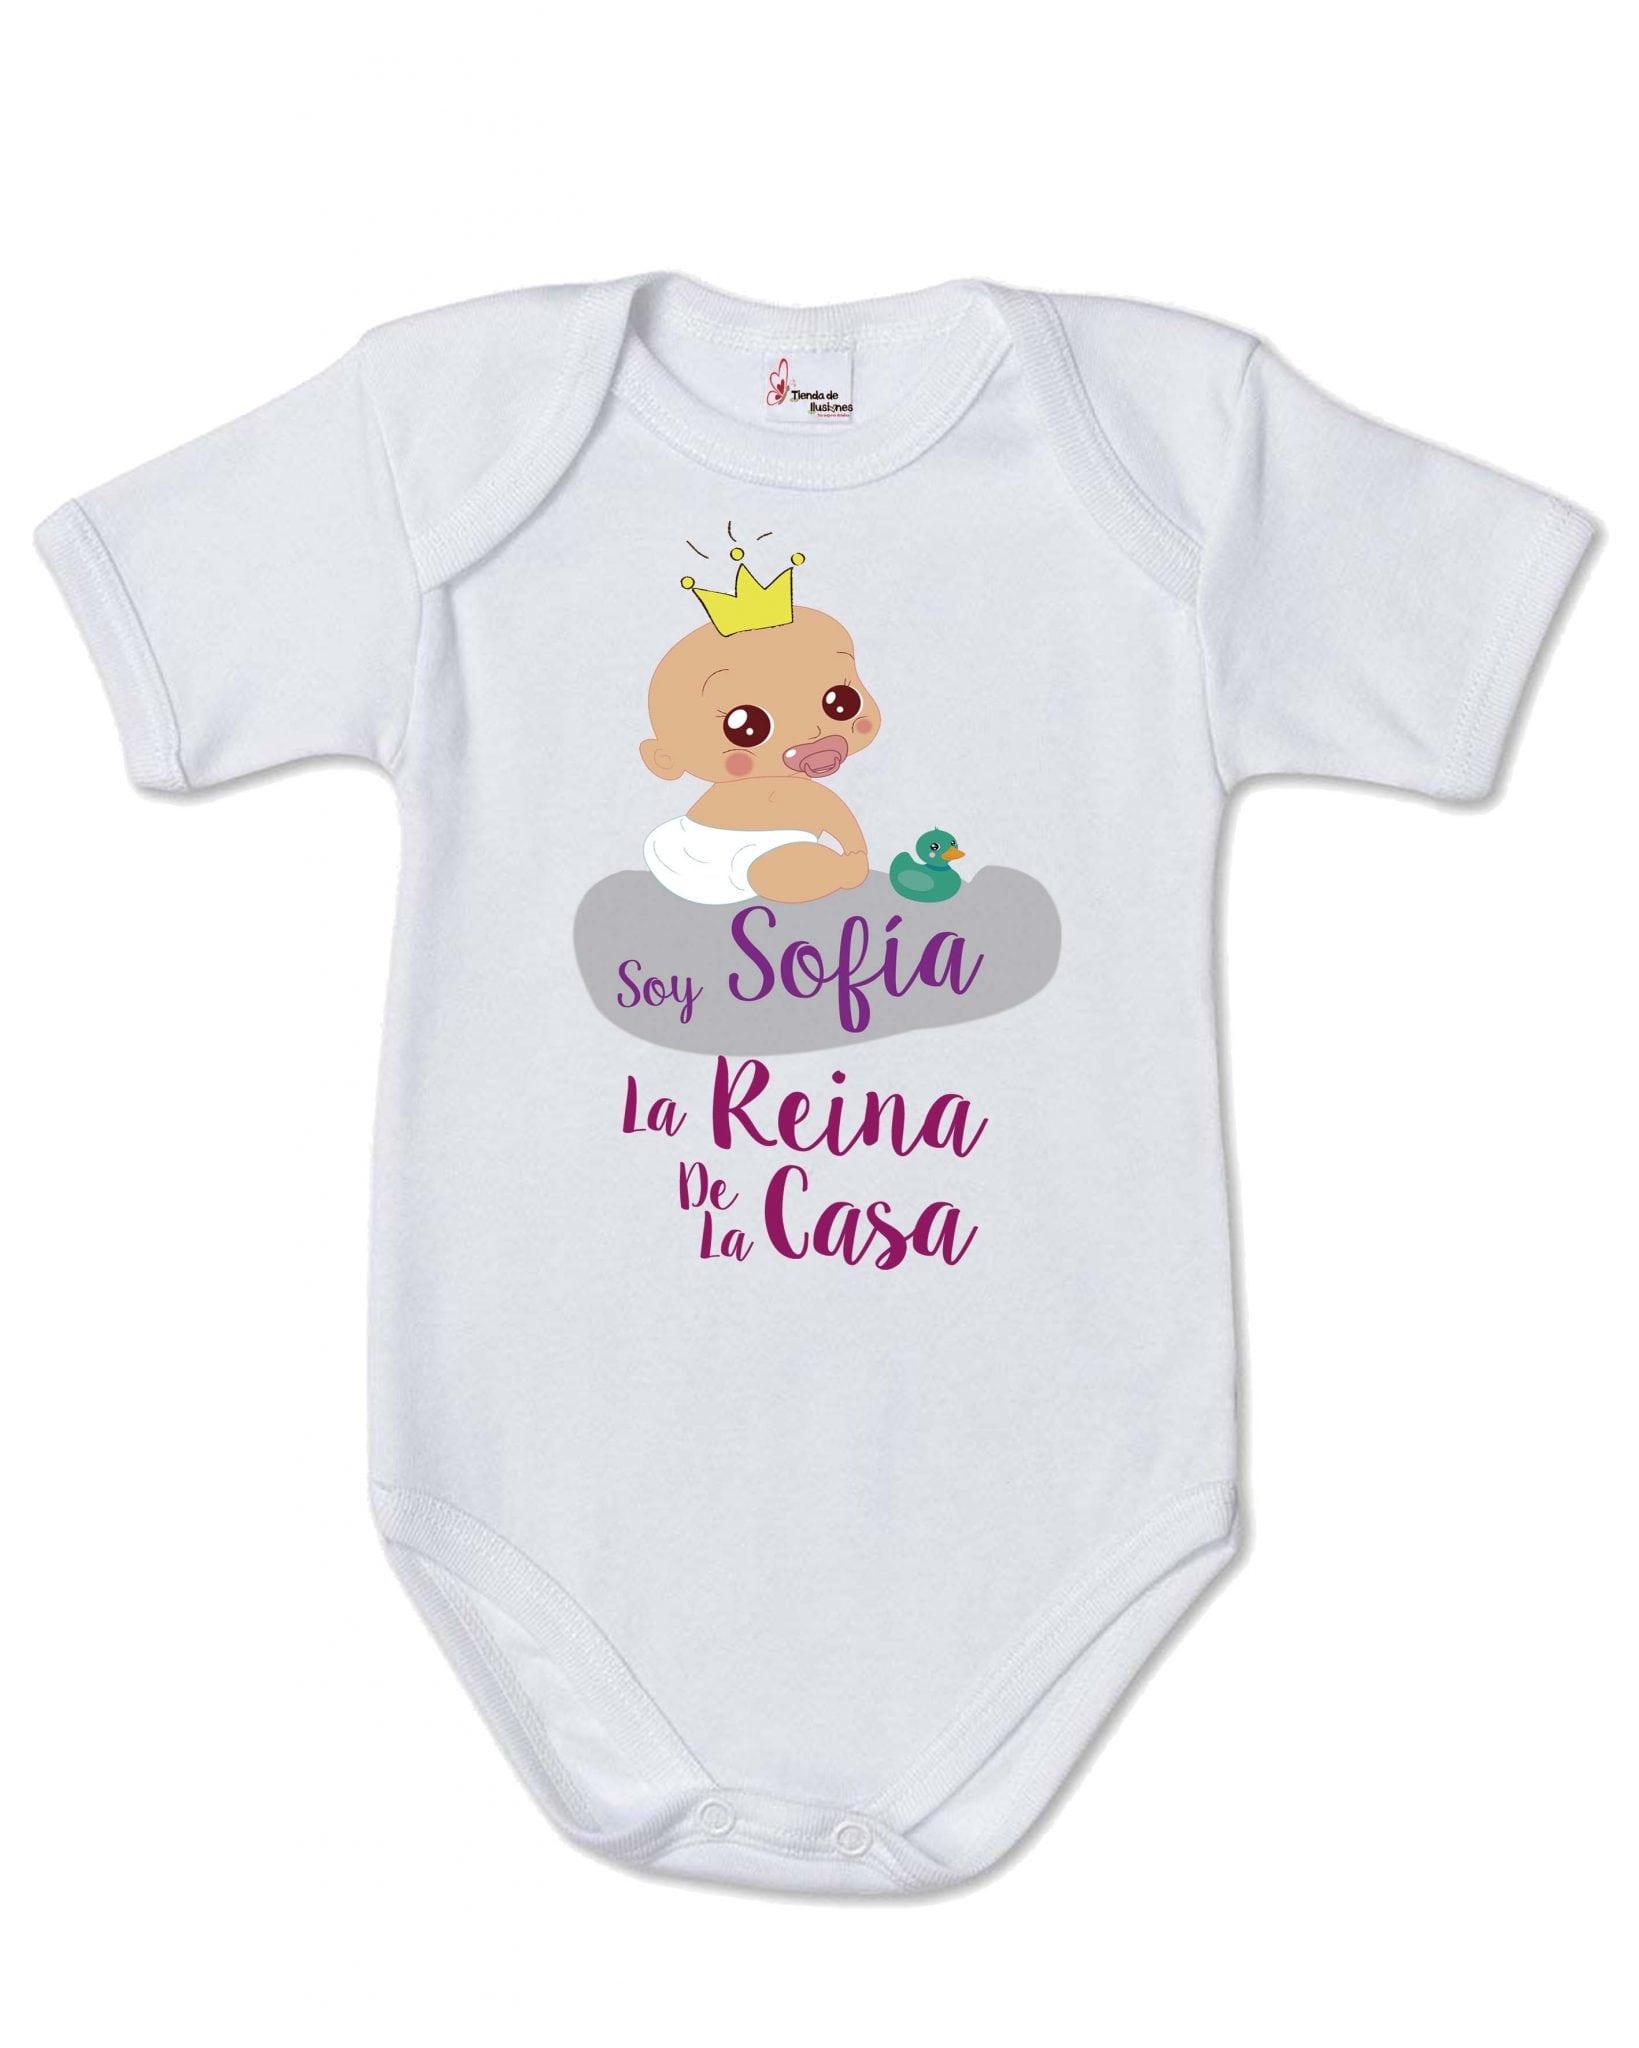 Body bebé personalizado corona reina de la casa - Tienda de ilusiones